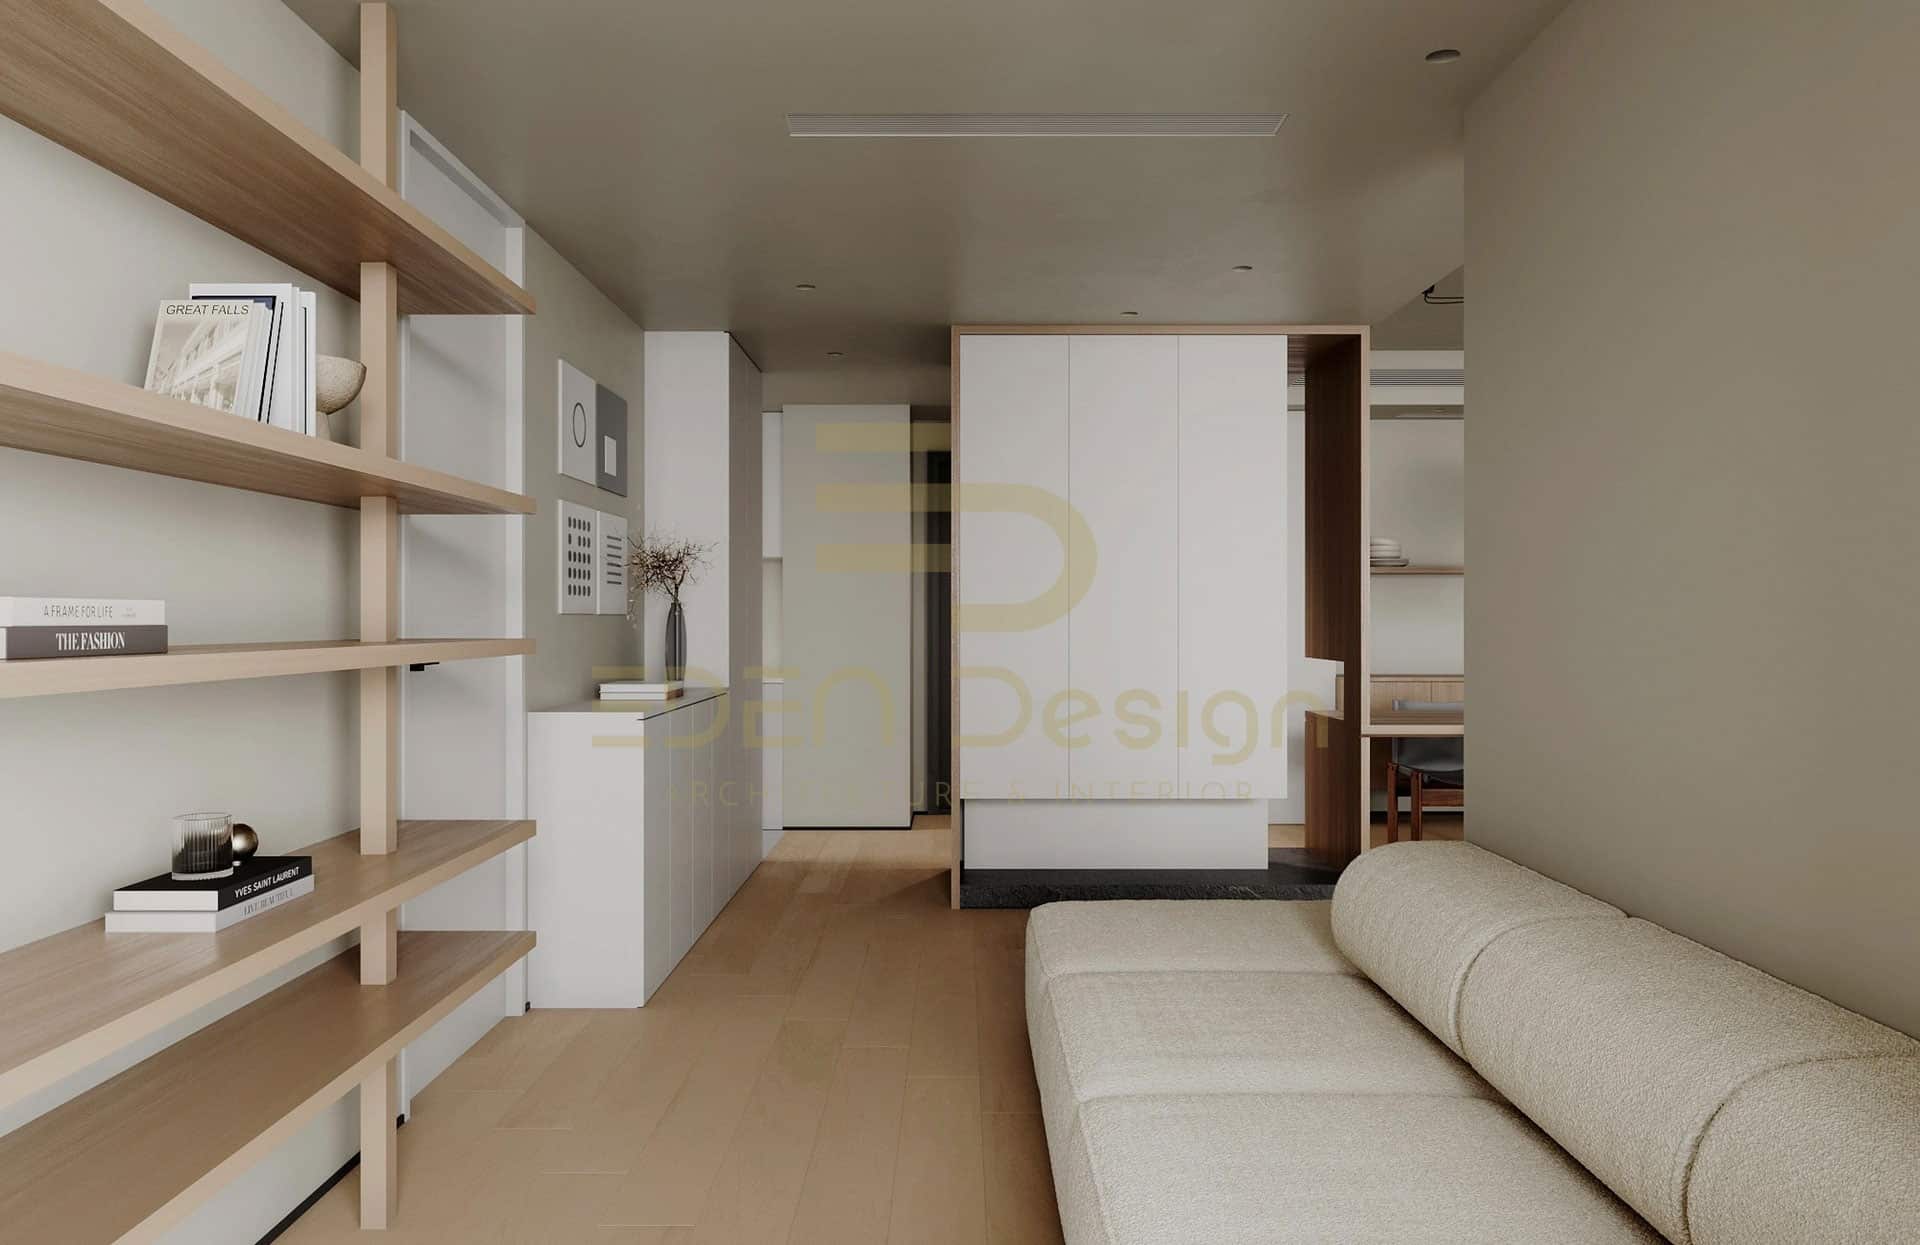 Thiết kế căn hộ 1 phòng ngủ theo phong cách đơn giản, ấm áp